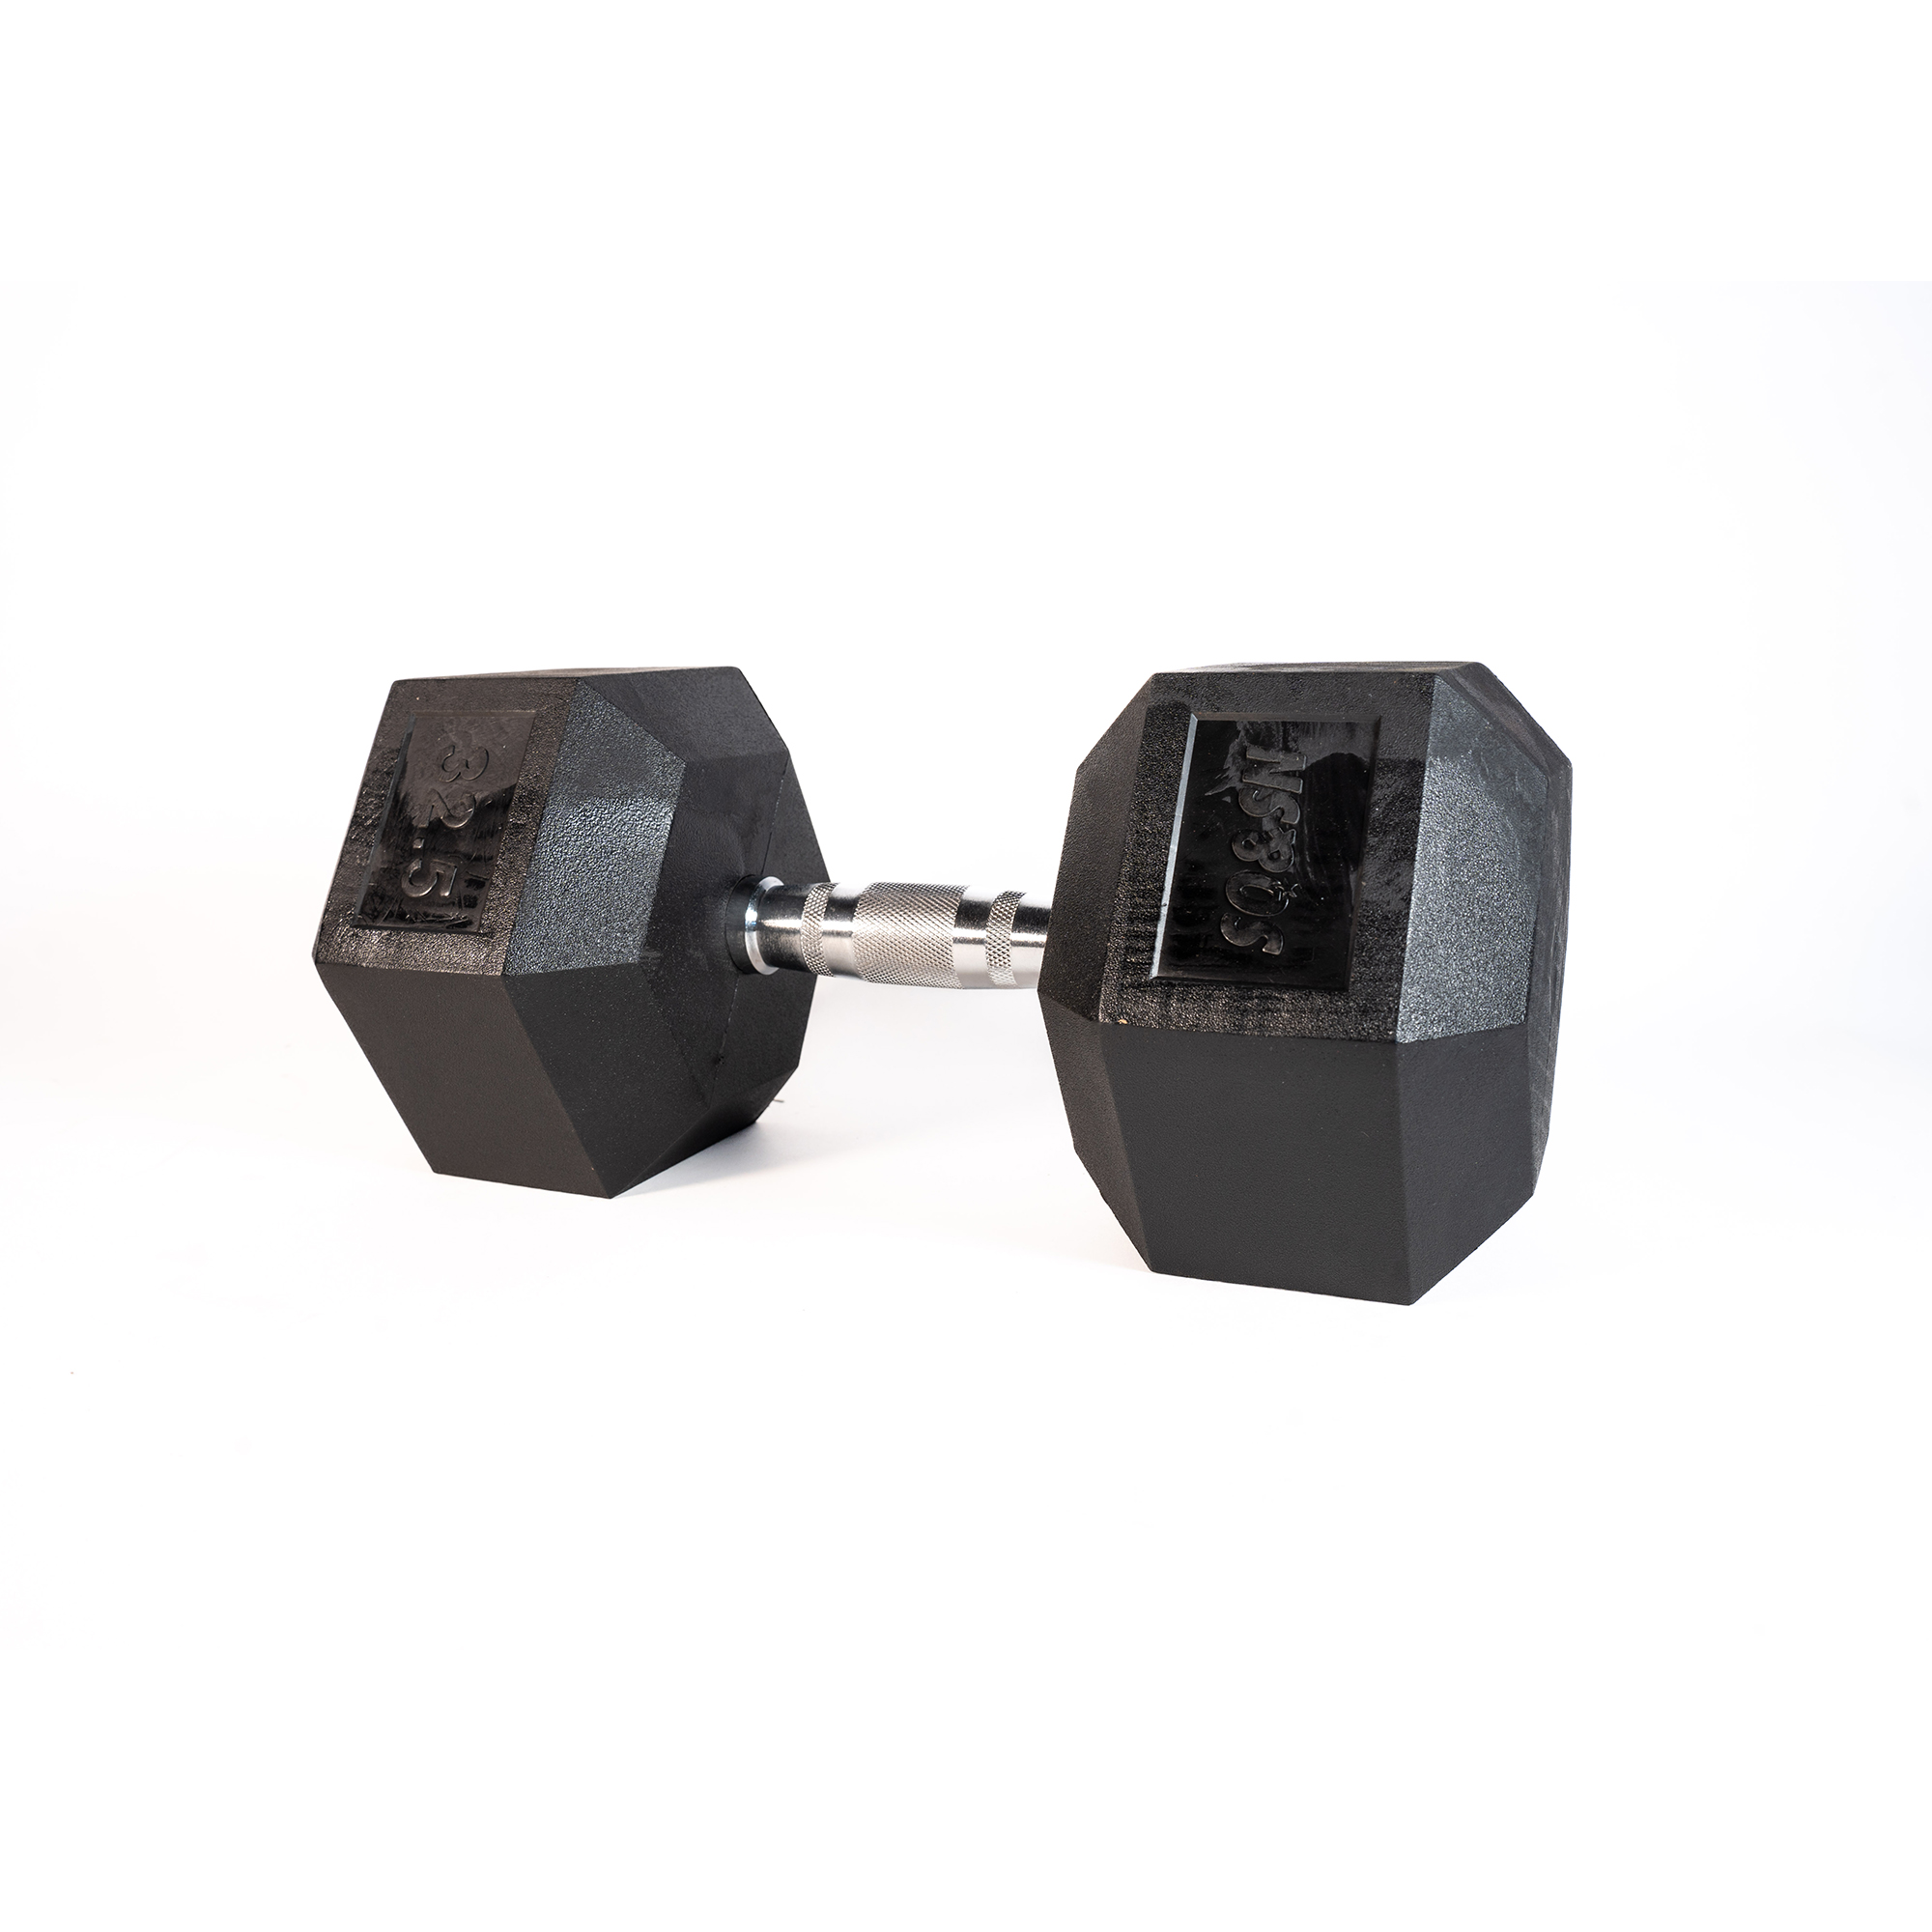 SQ&SN Hexagon Håndvægt (32,5 kg) med forkromet greb. Udstyr til crossfit træning, styrketræning og funktionel træning thumbnail